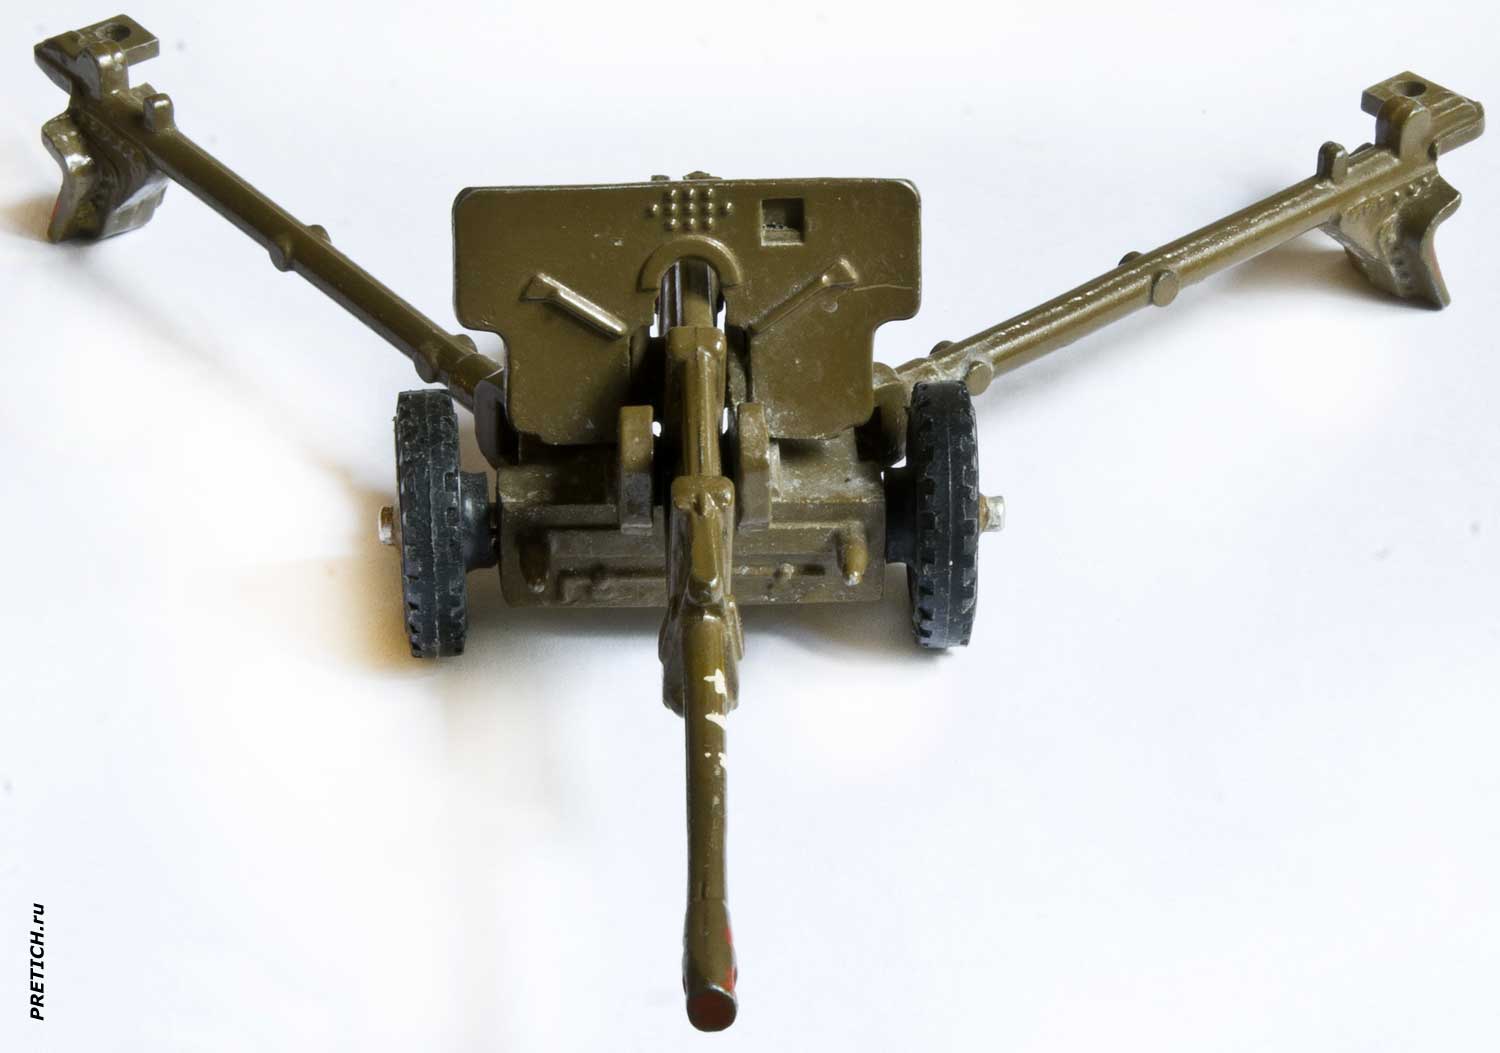 ЗиС-3 76-мм дивизионная пушка обр. 1942 г. Модель-копия